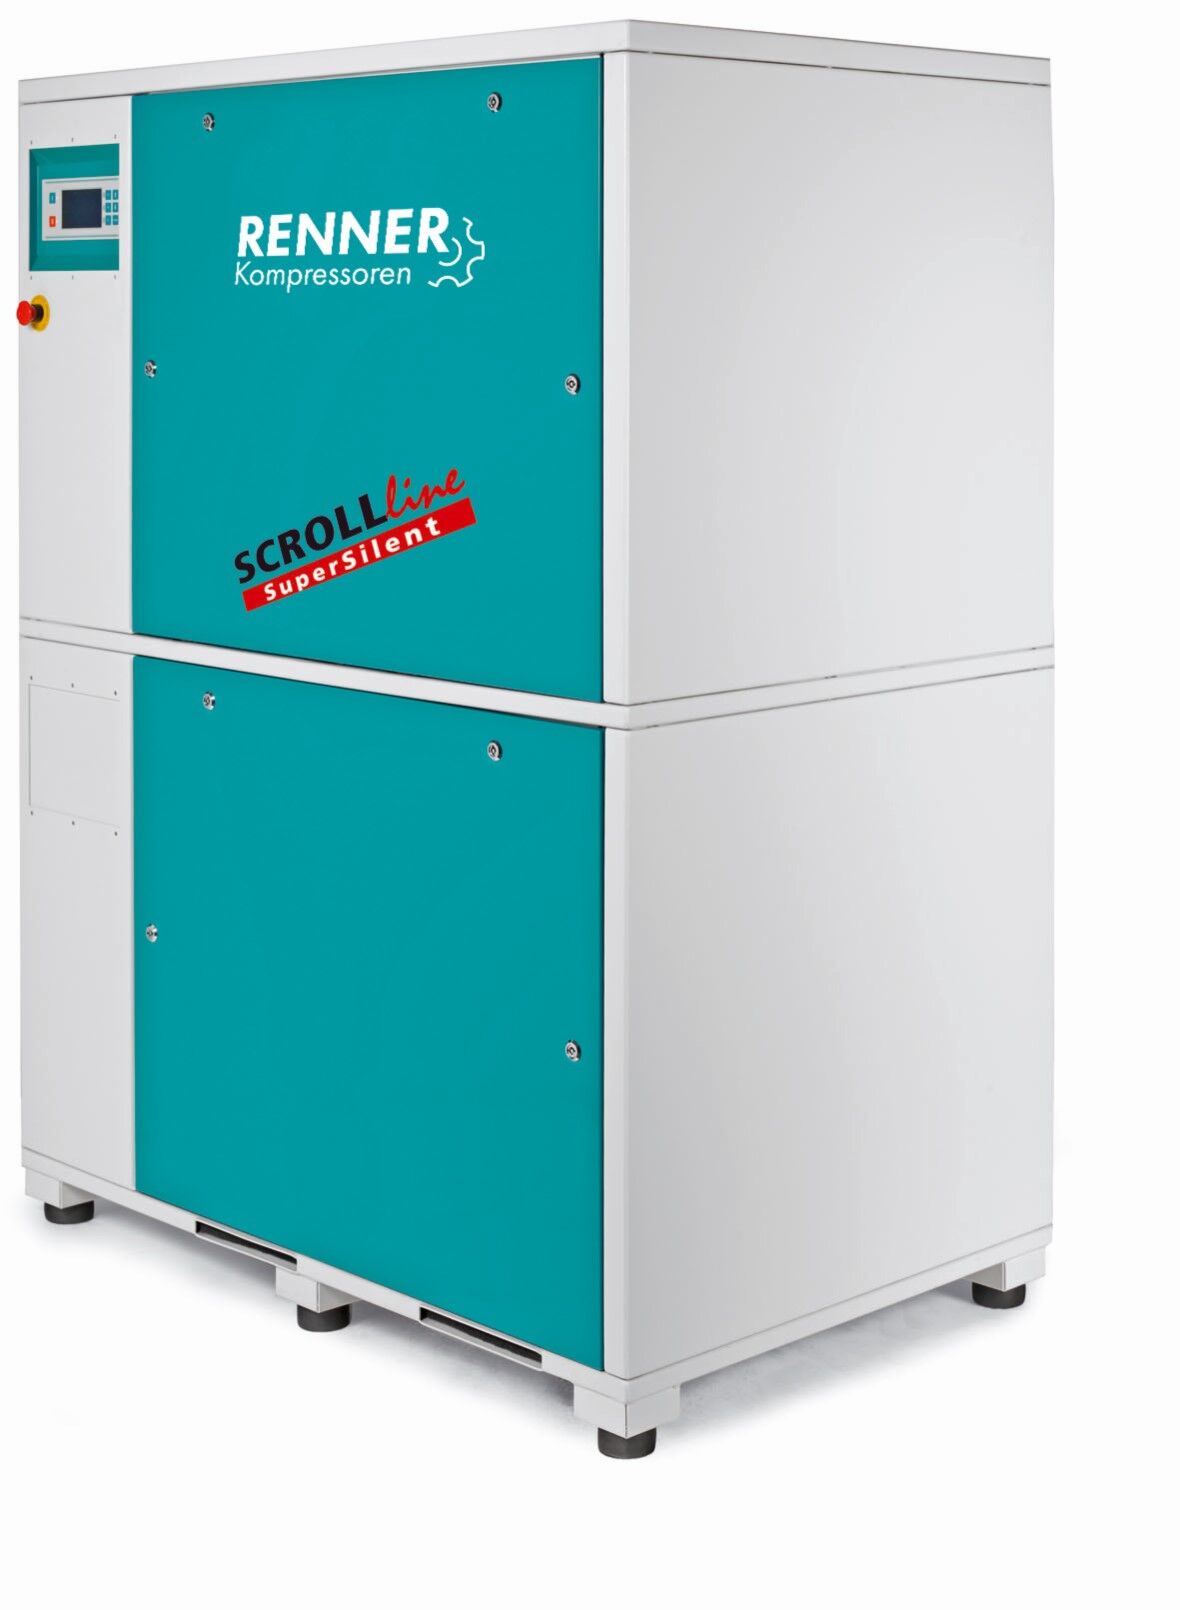 RENNER-Kompressor SLM-S 9,0 als Mehrfachanlage- SuperSilent ölfreier Scrollkompressor